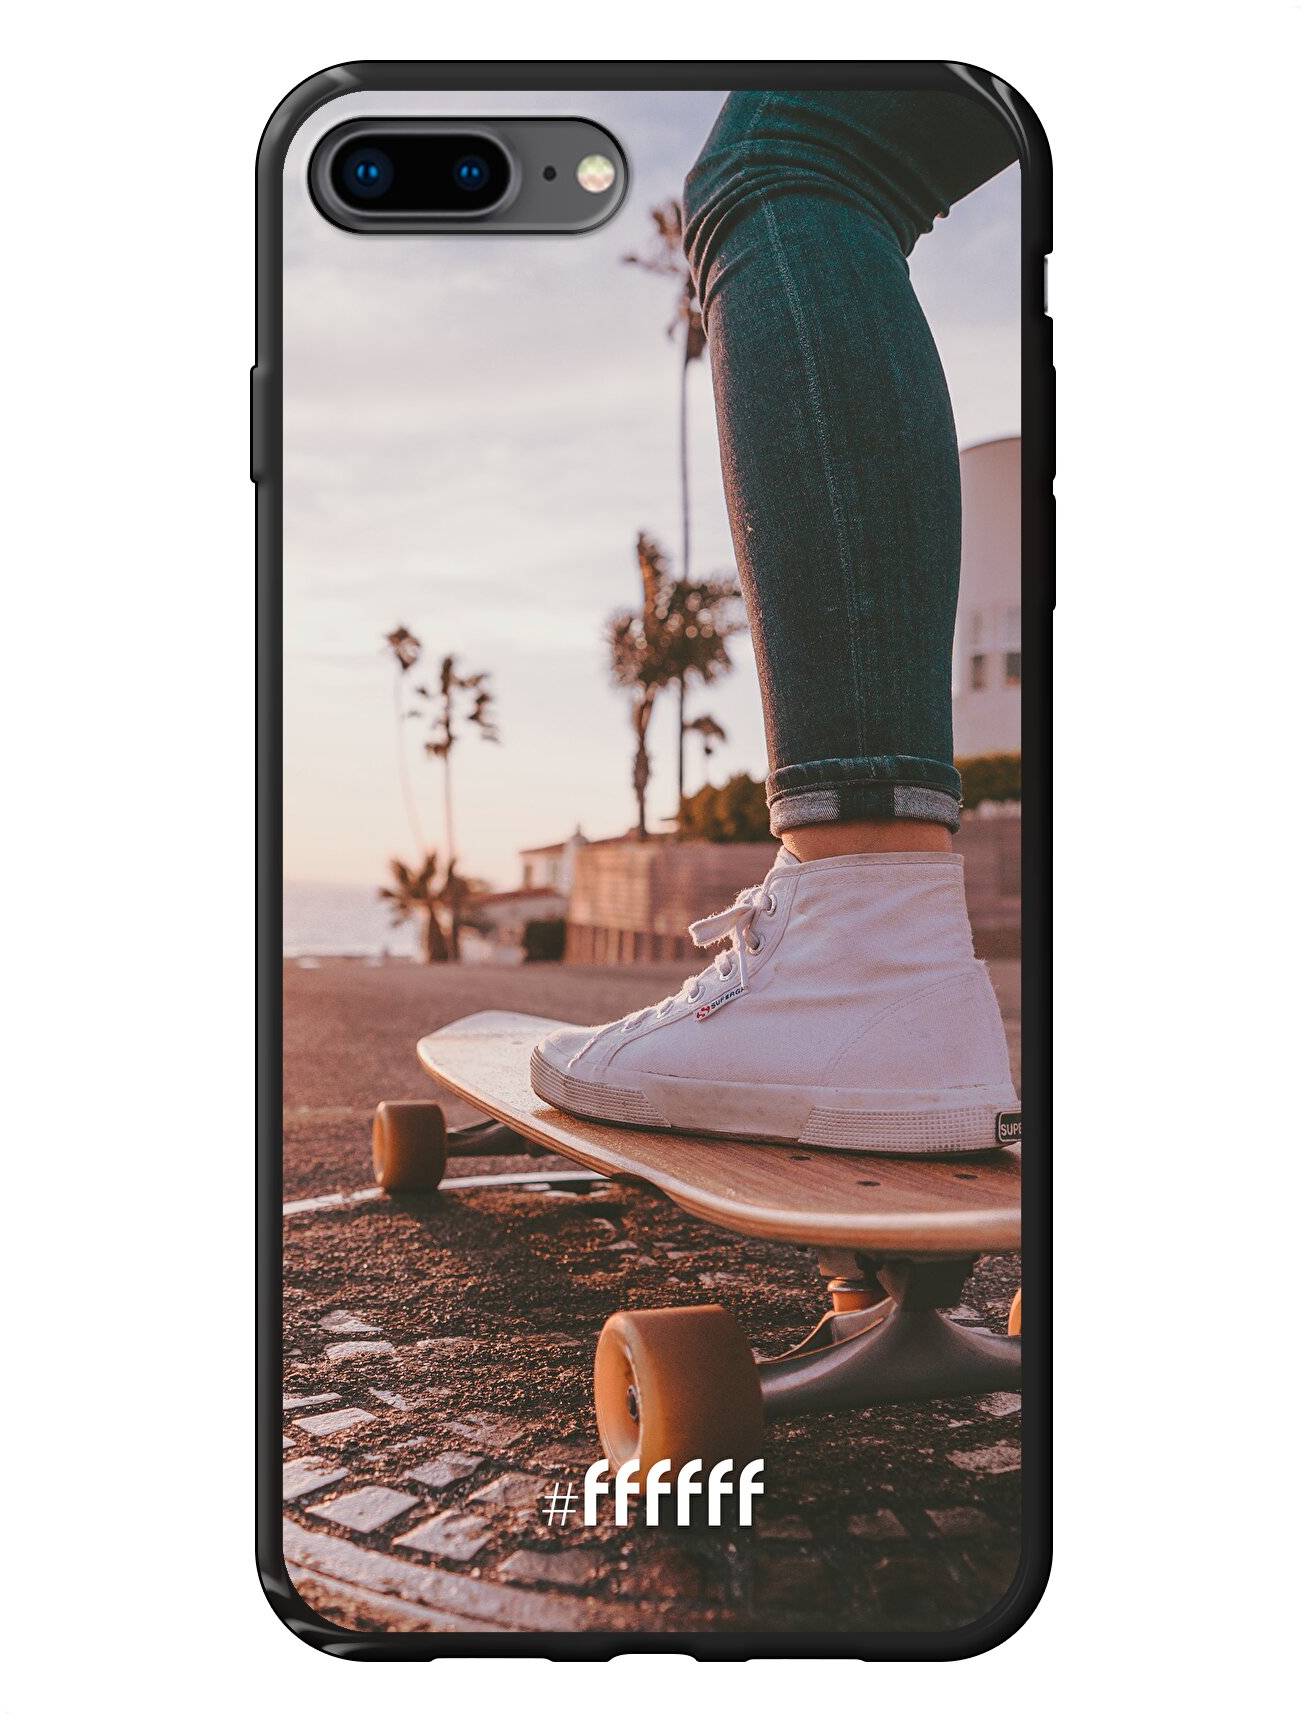 Skateboarding iPhone 7 Plus